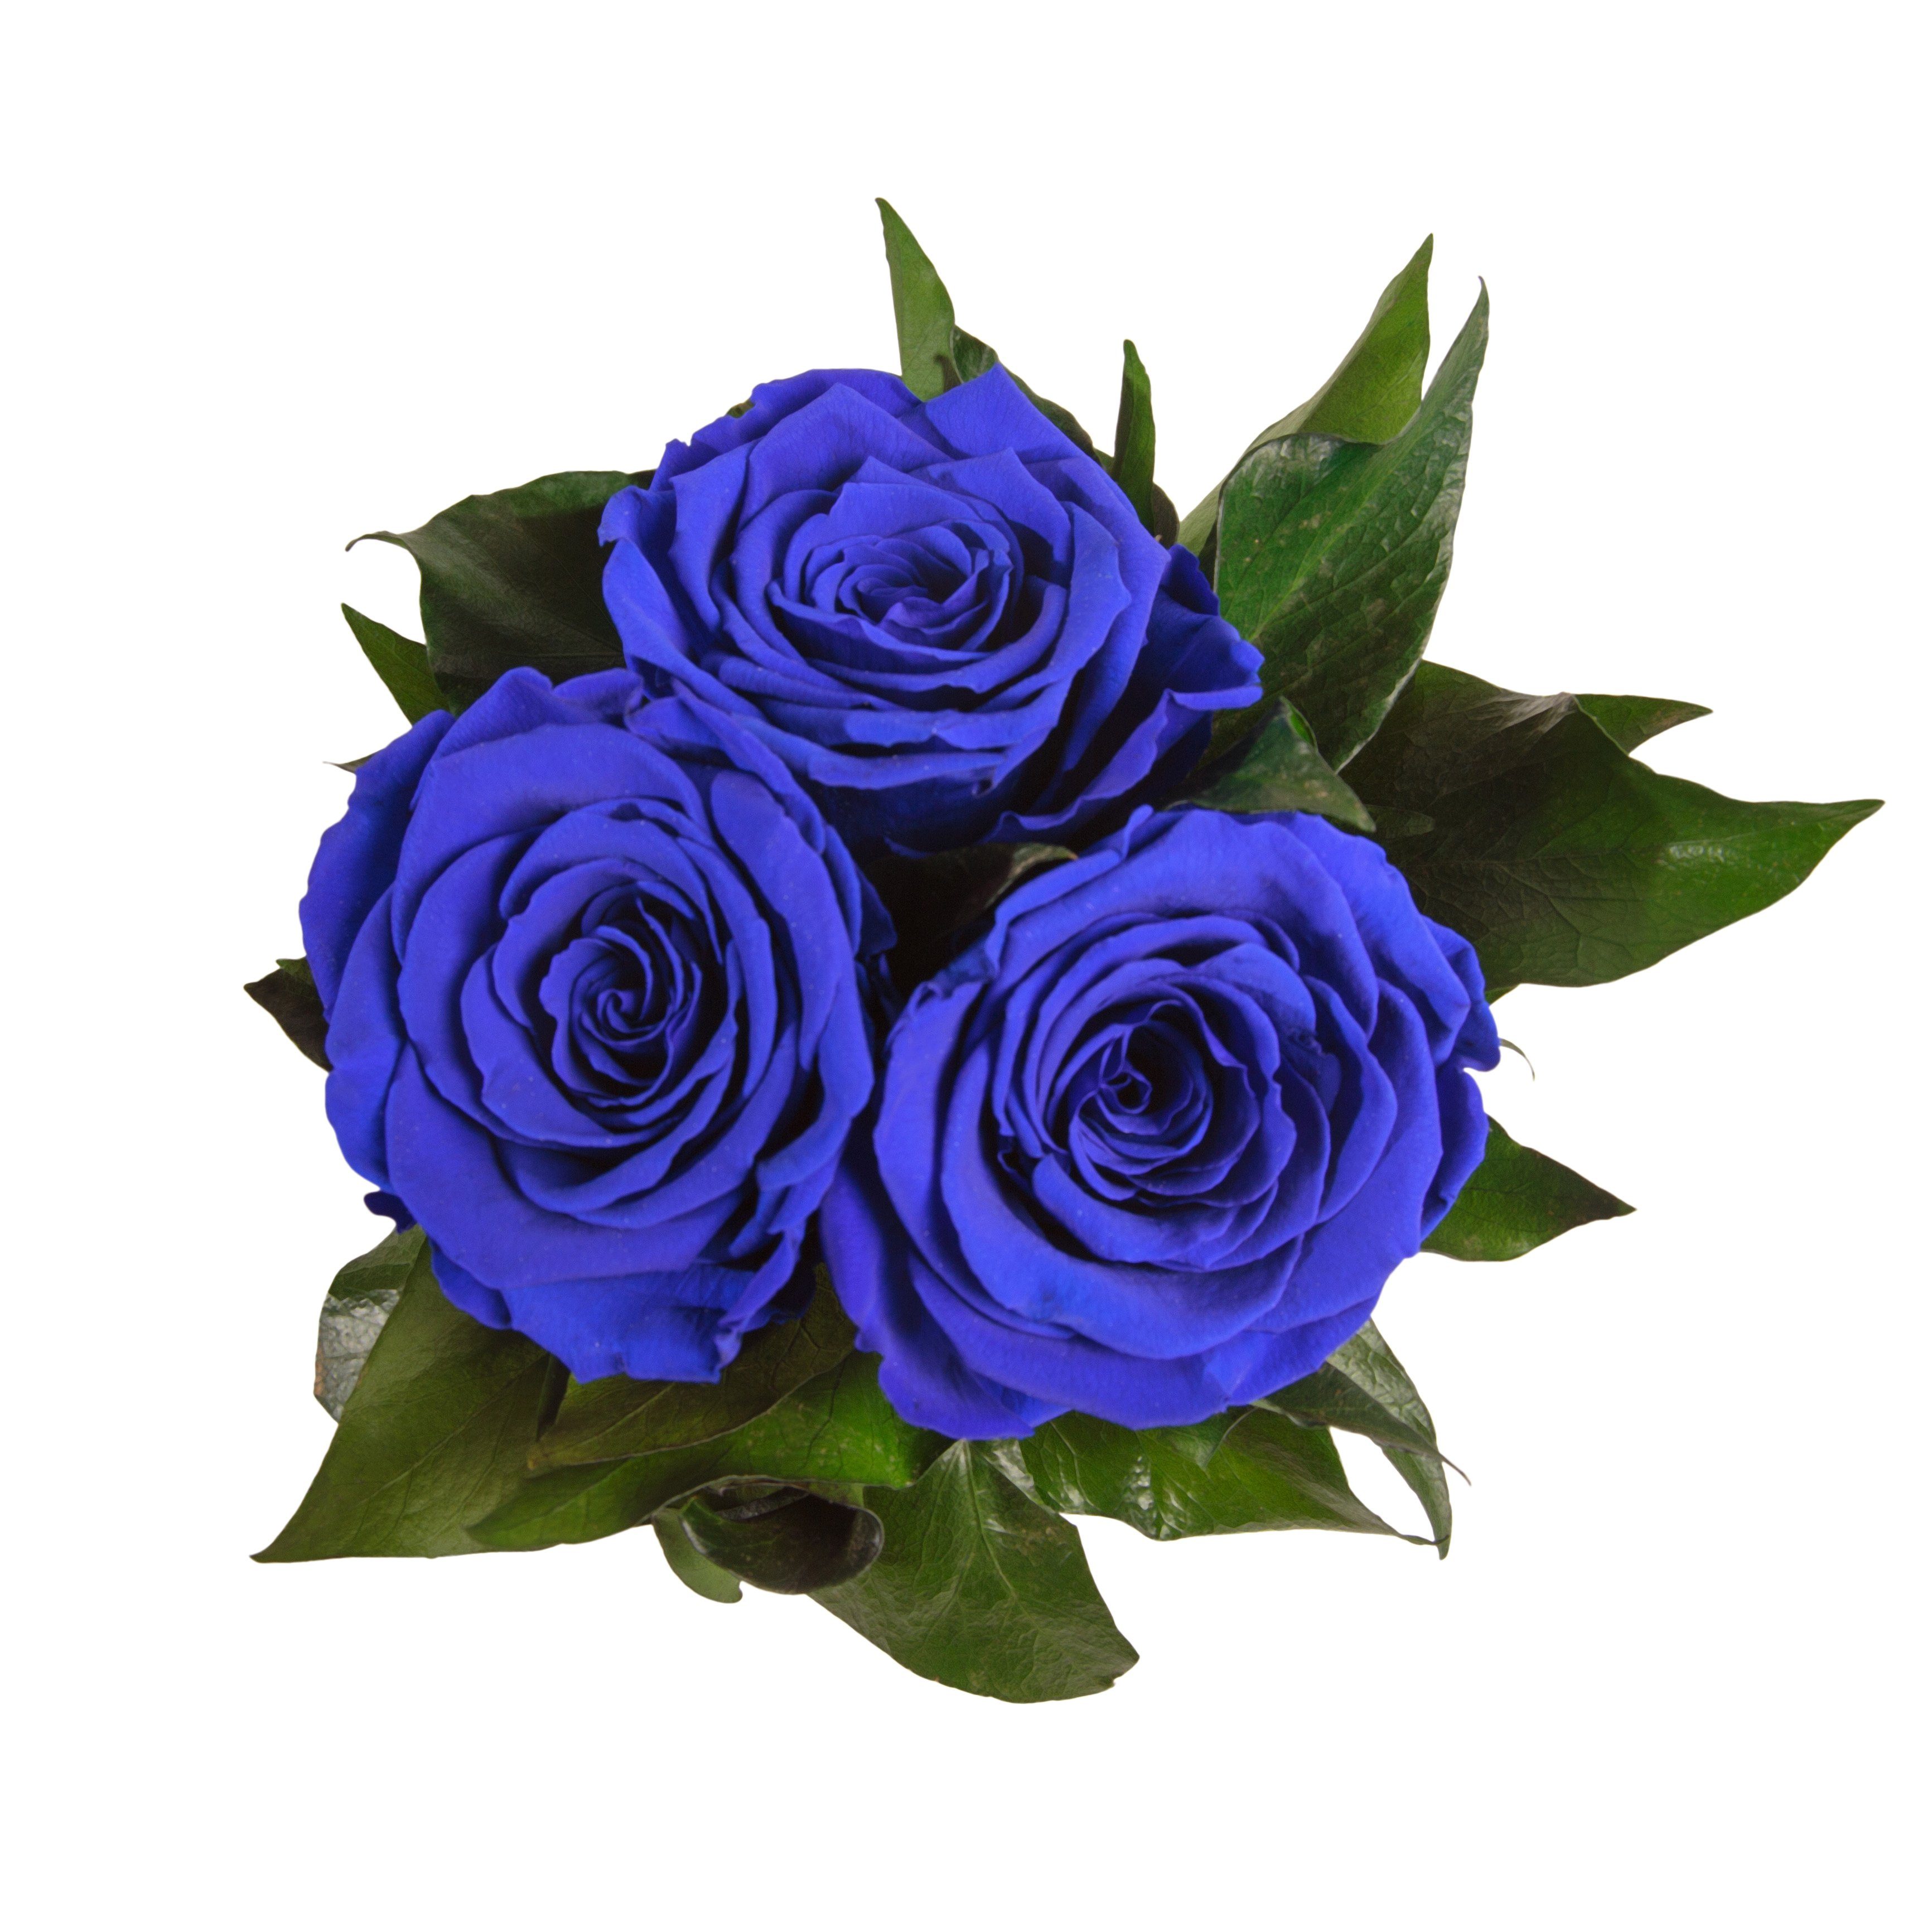 Kunstblume Infinity Rosenbox weiß rund 10 Rose, Höhe echte 3 cm, Blau Sie für Rosen Heidelberg, Rosen SCHULZ ROSEMARIE Geschenk konserviert